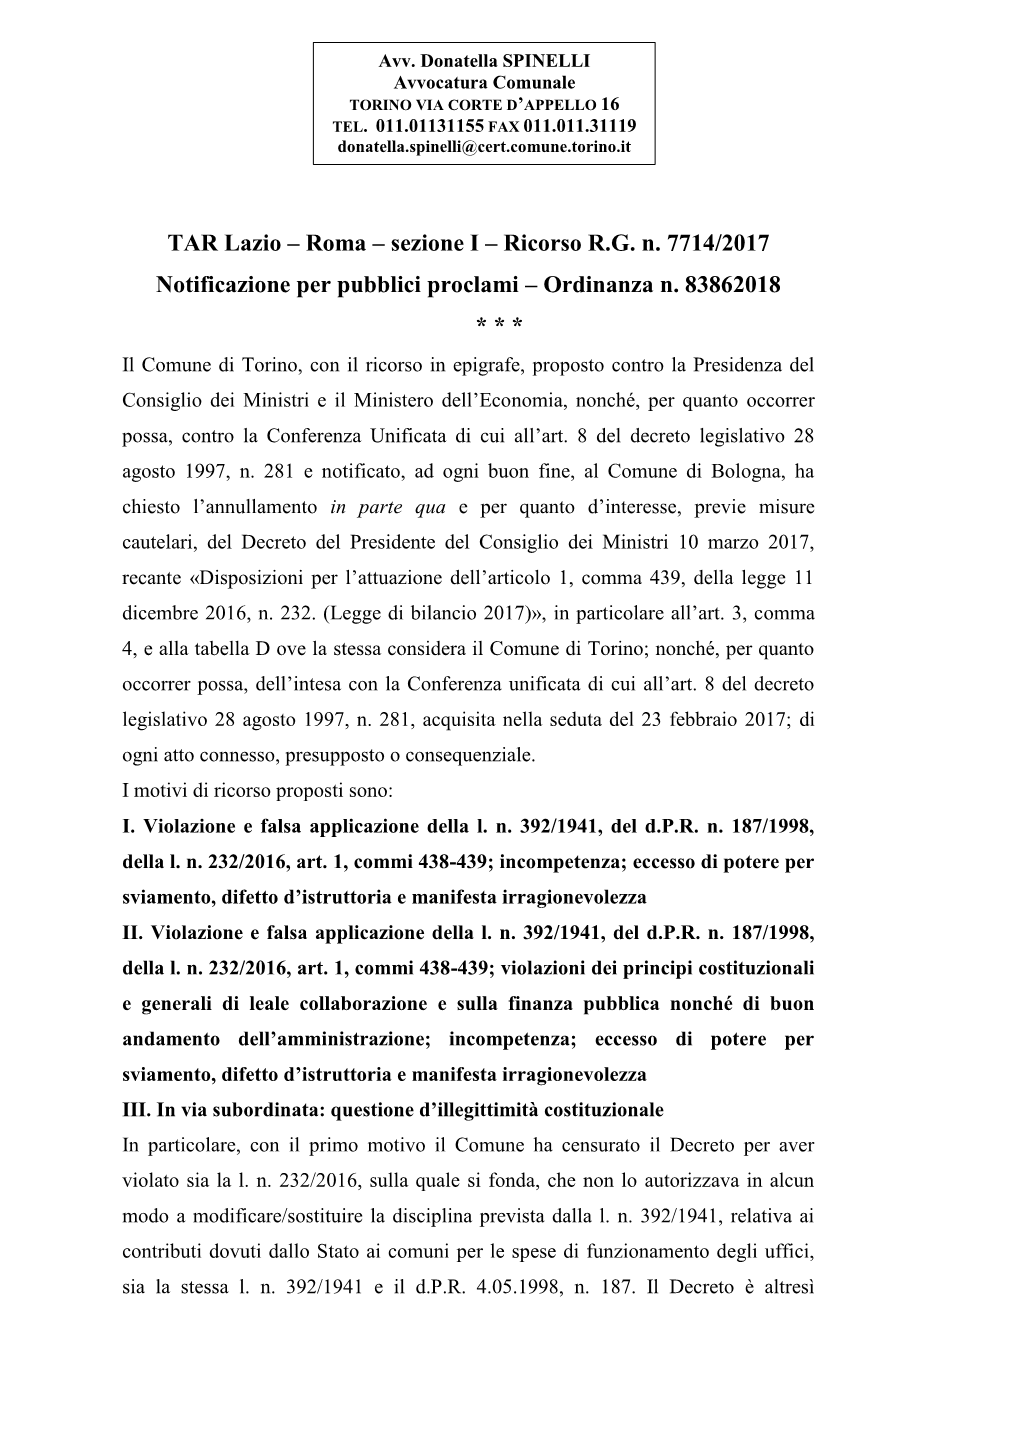 TAR Lazio – Roma – Sezione I – Ricorso R.G. N. 7714/2017 Notificazione Per Pubblici Proclami – Ordinanza N